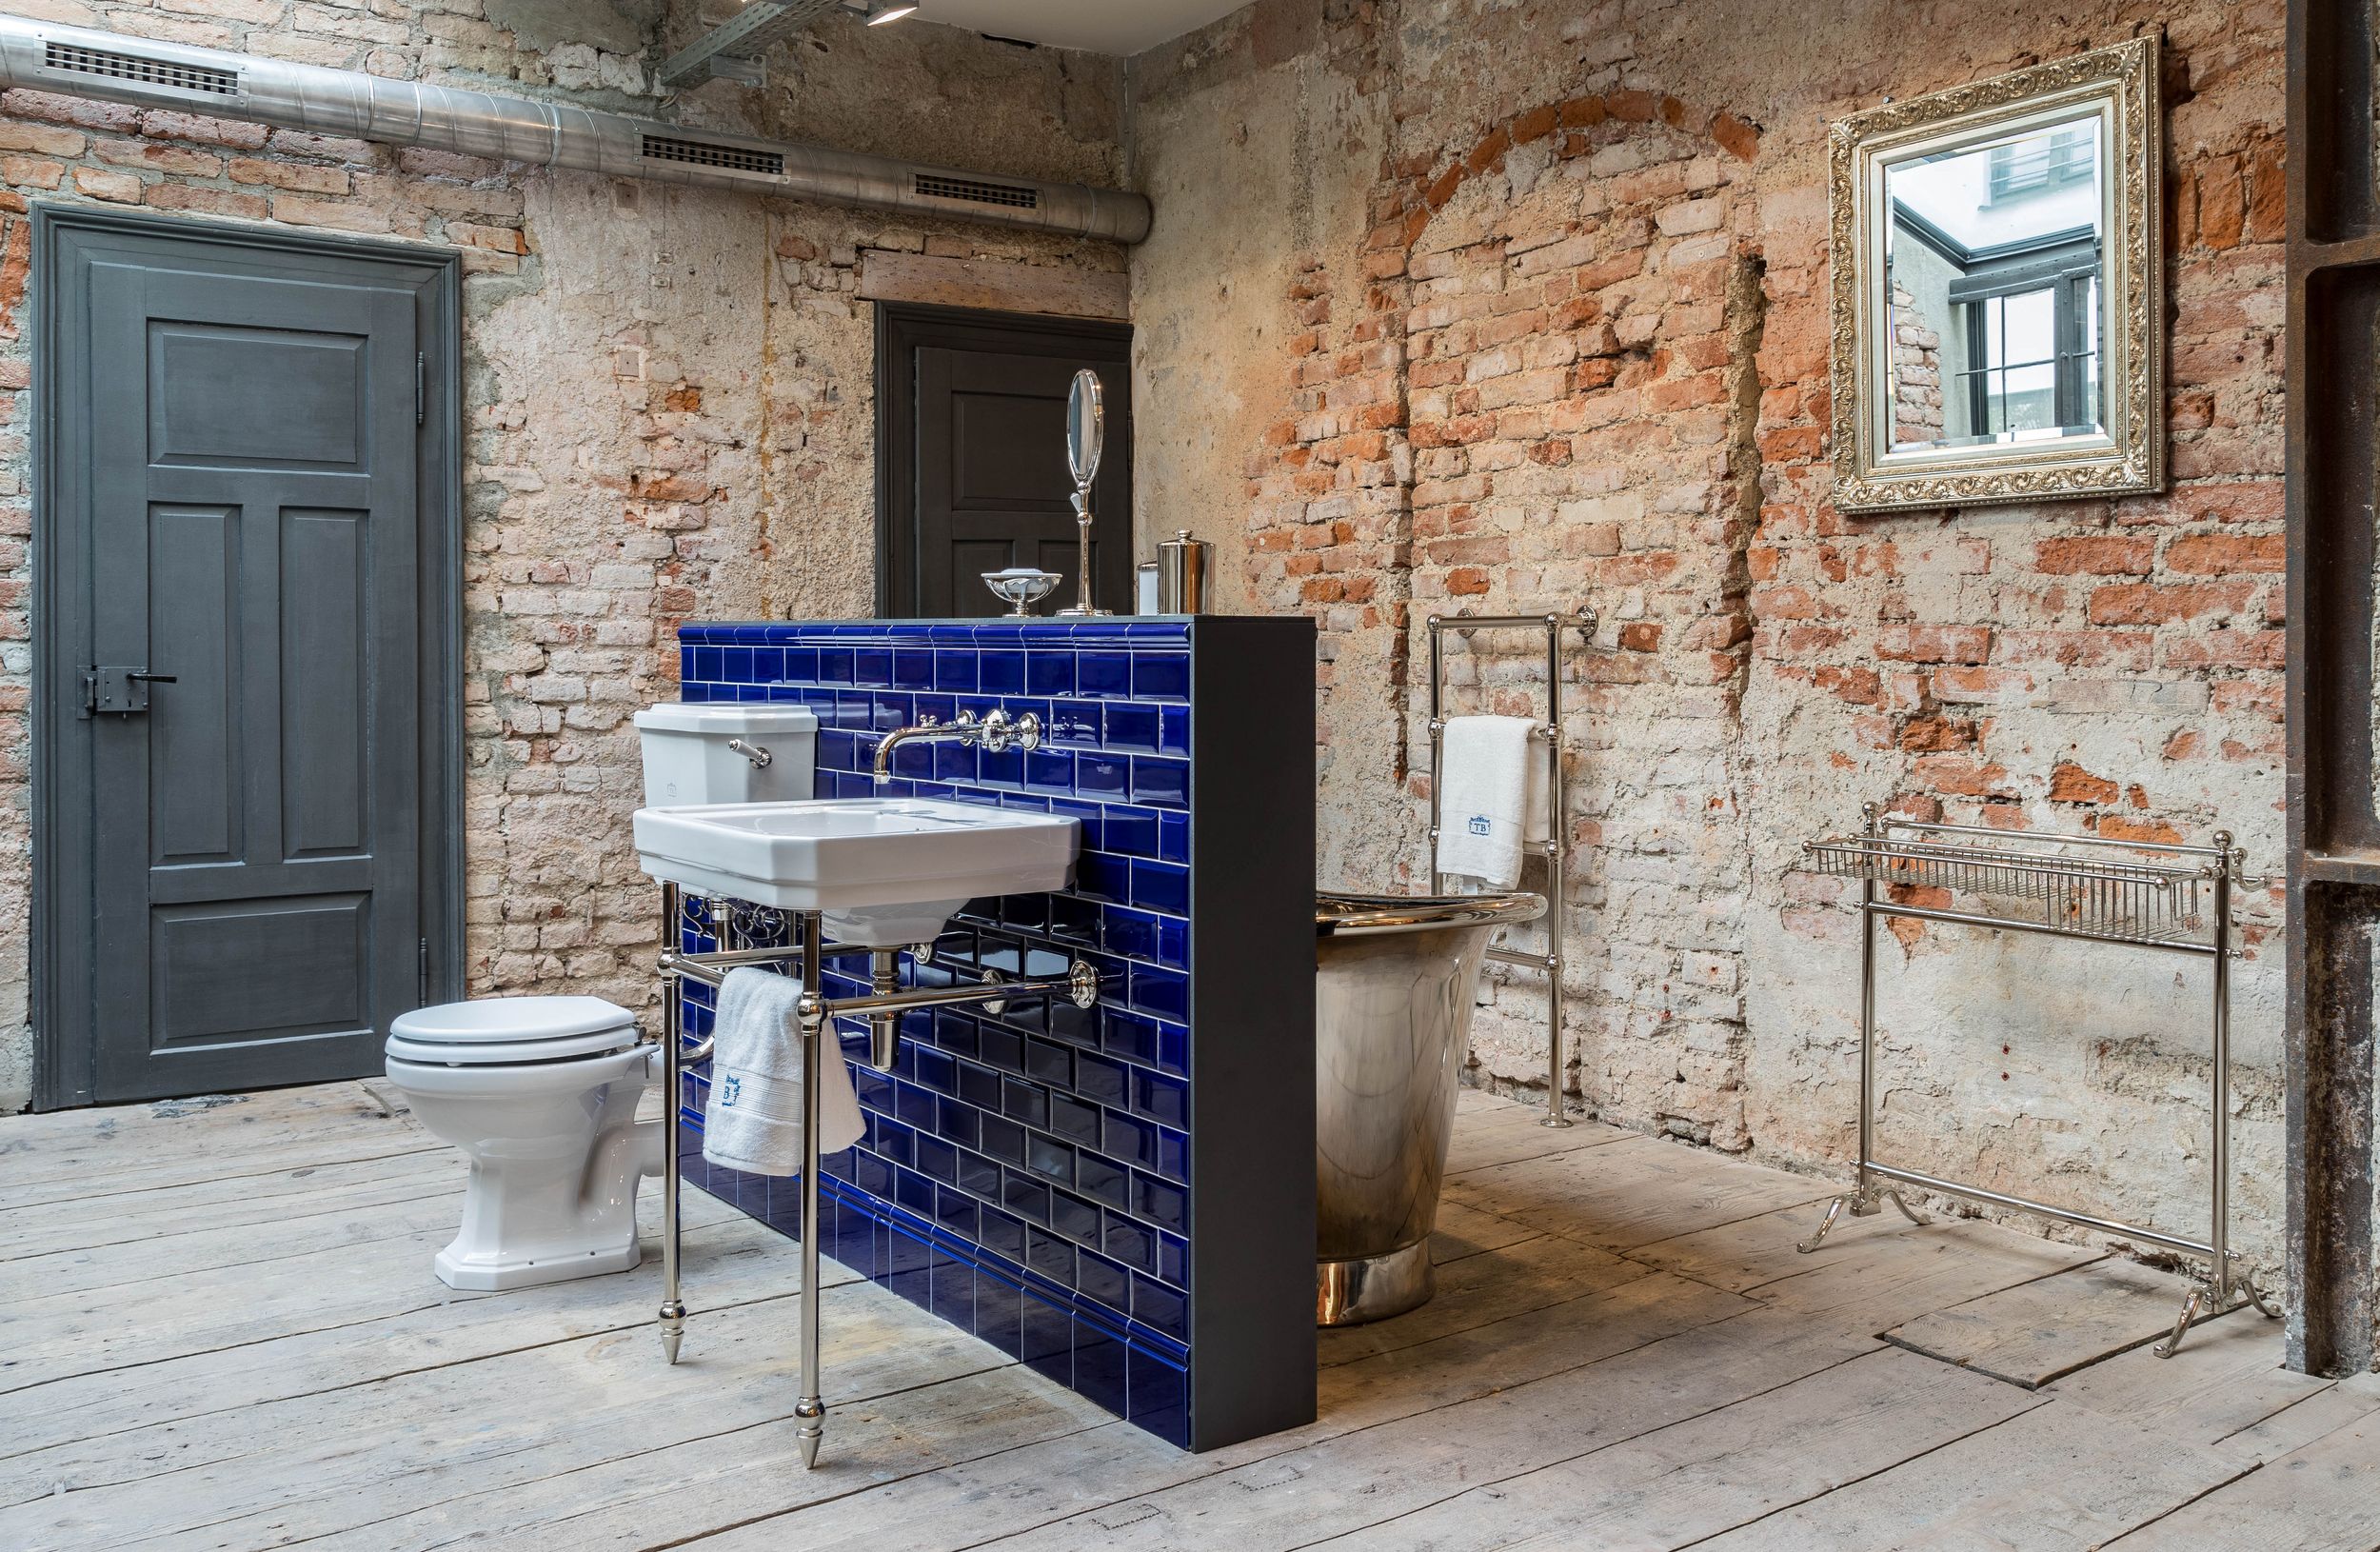 Sehr individuell gestaltetes Badezimmer im Industriedesign